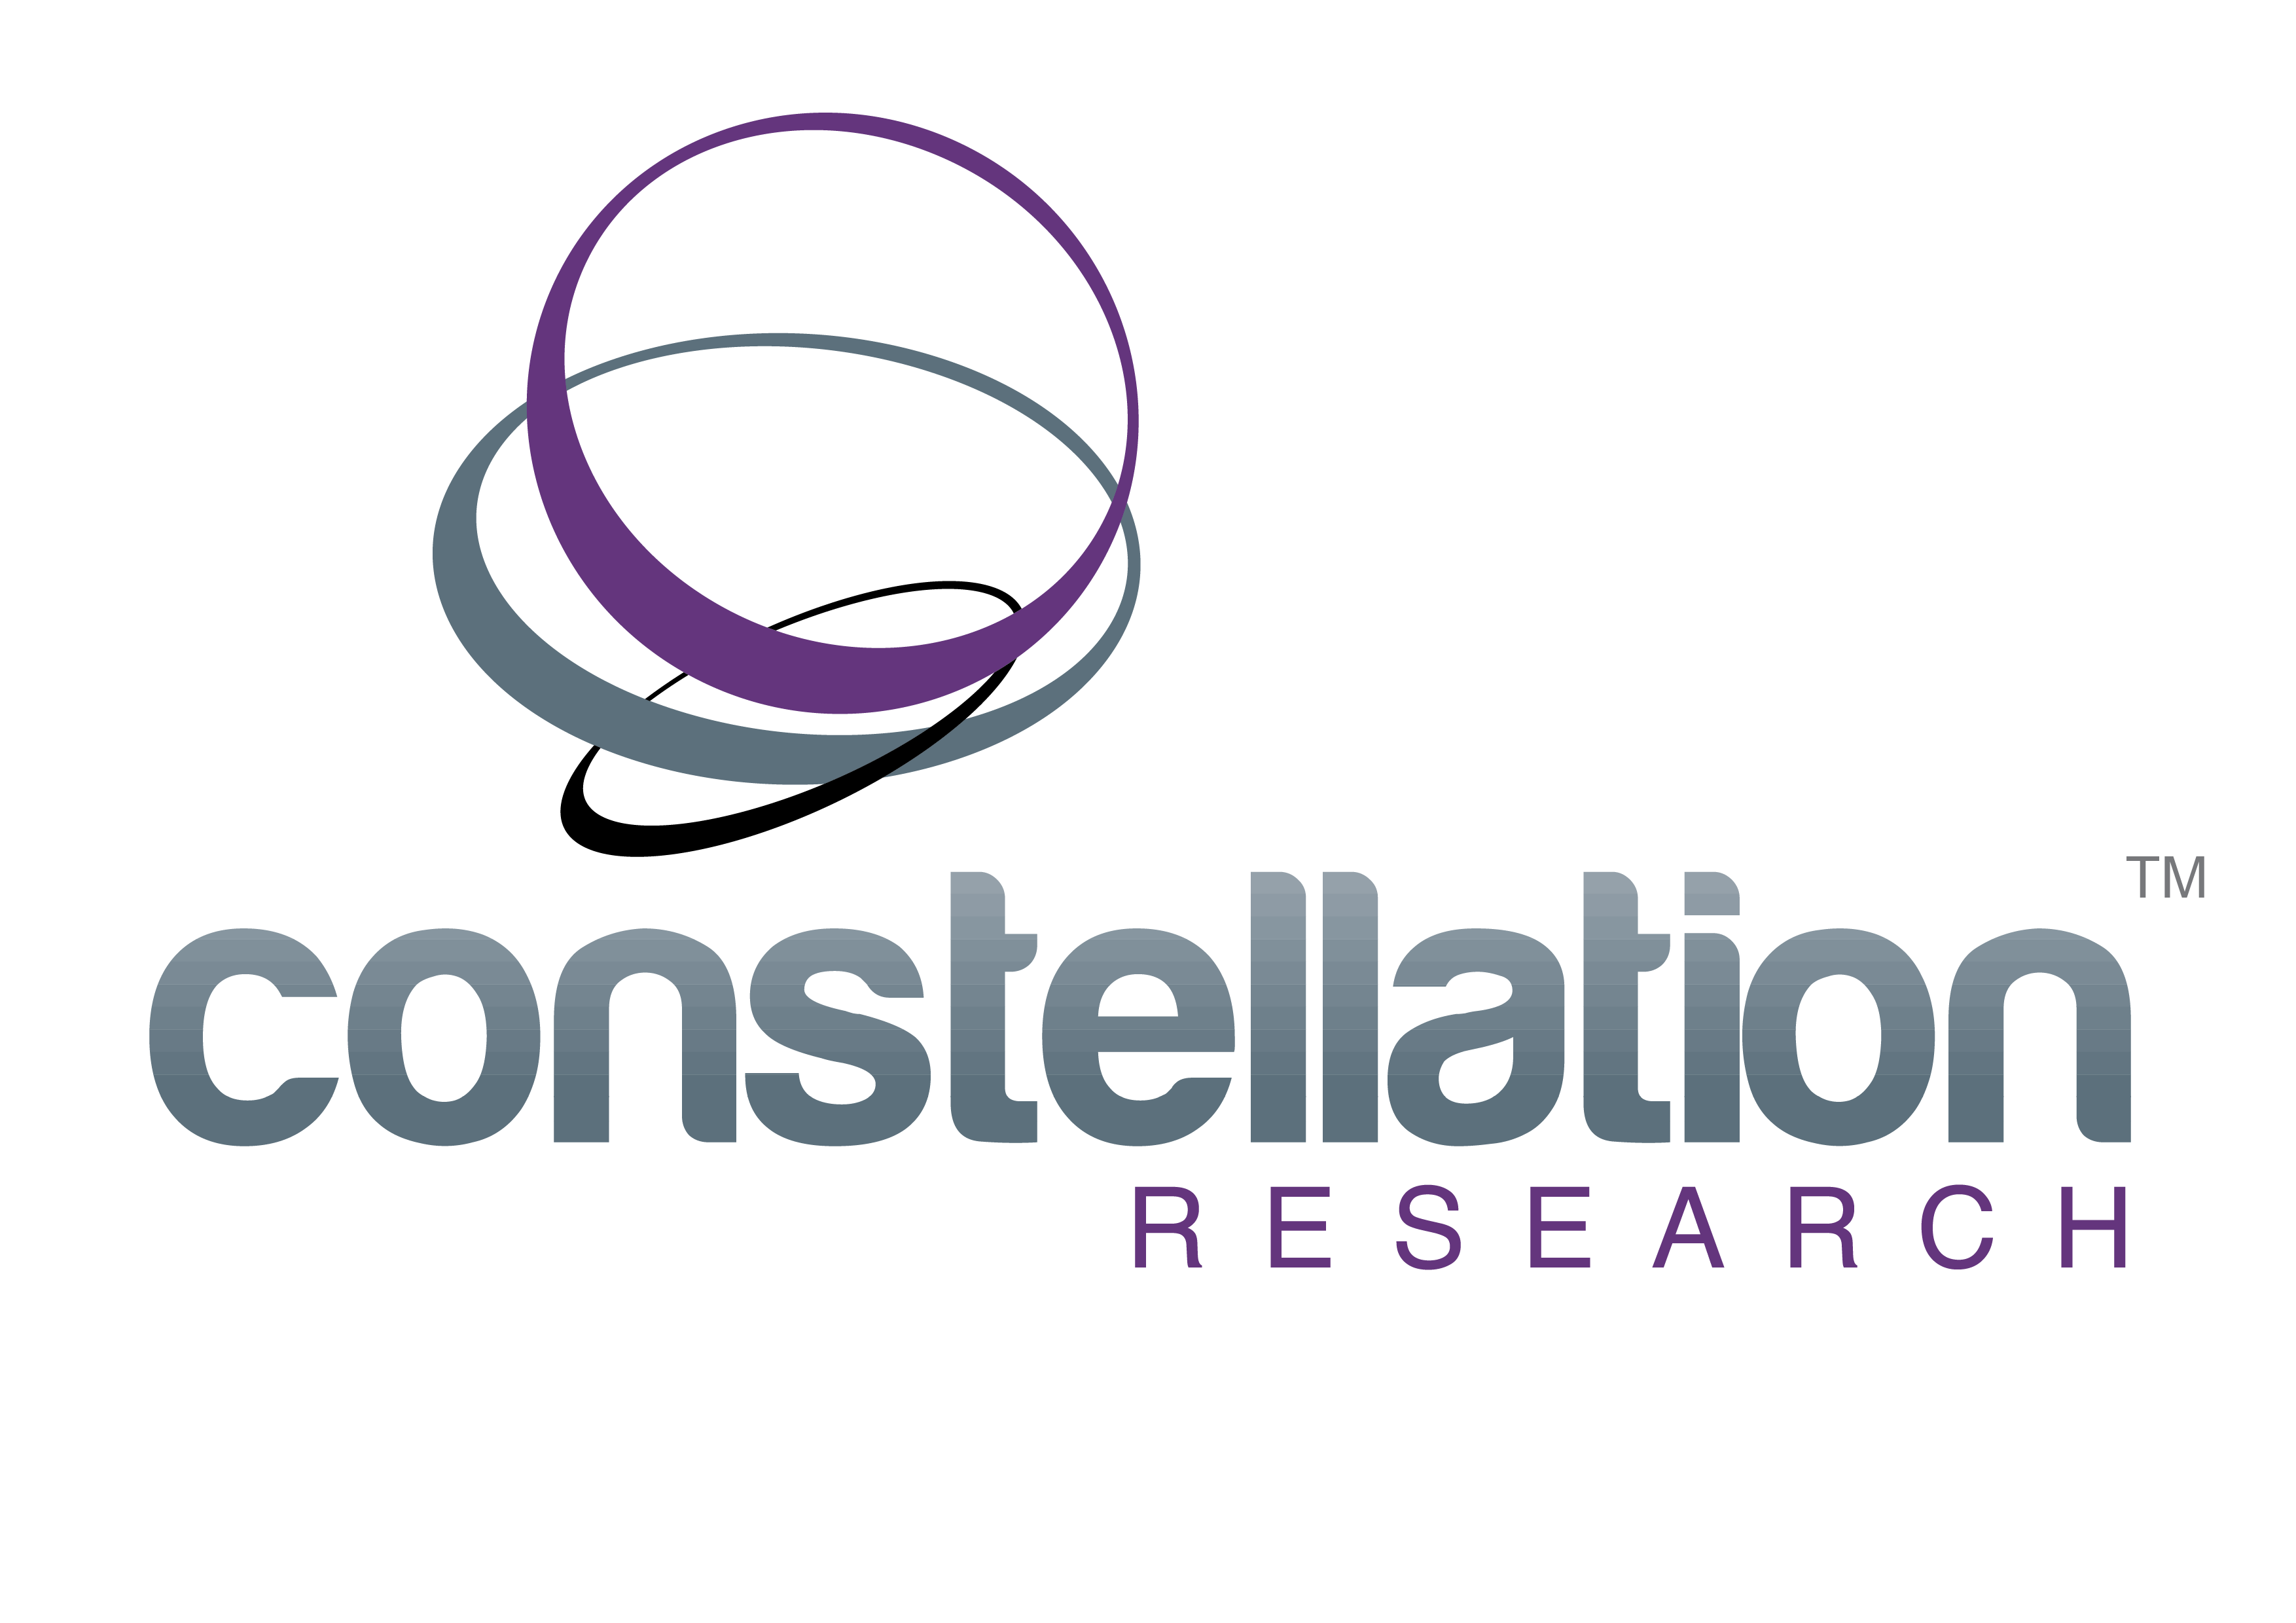 Constellation Logo - constellation logo-color-with tmweb-01 - VANTIQ